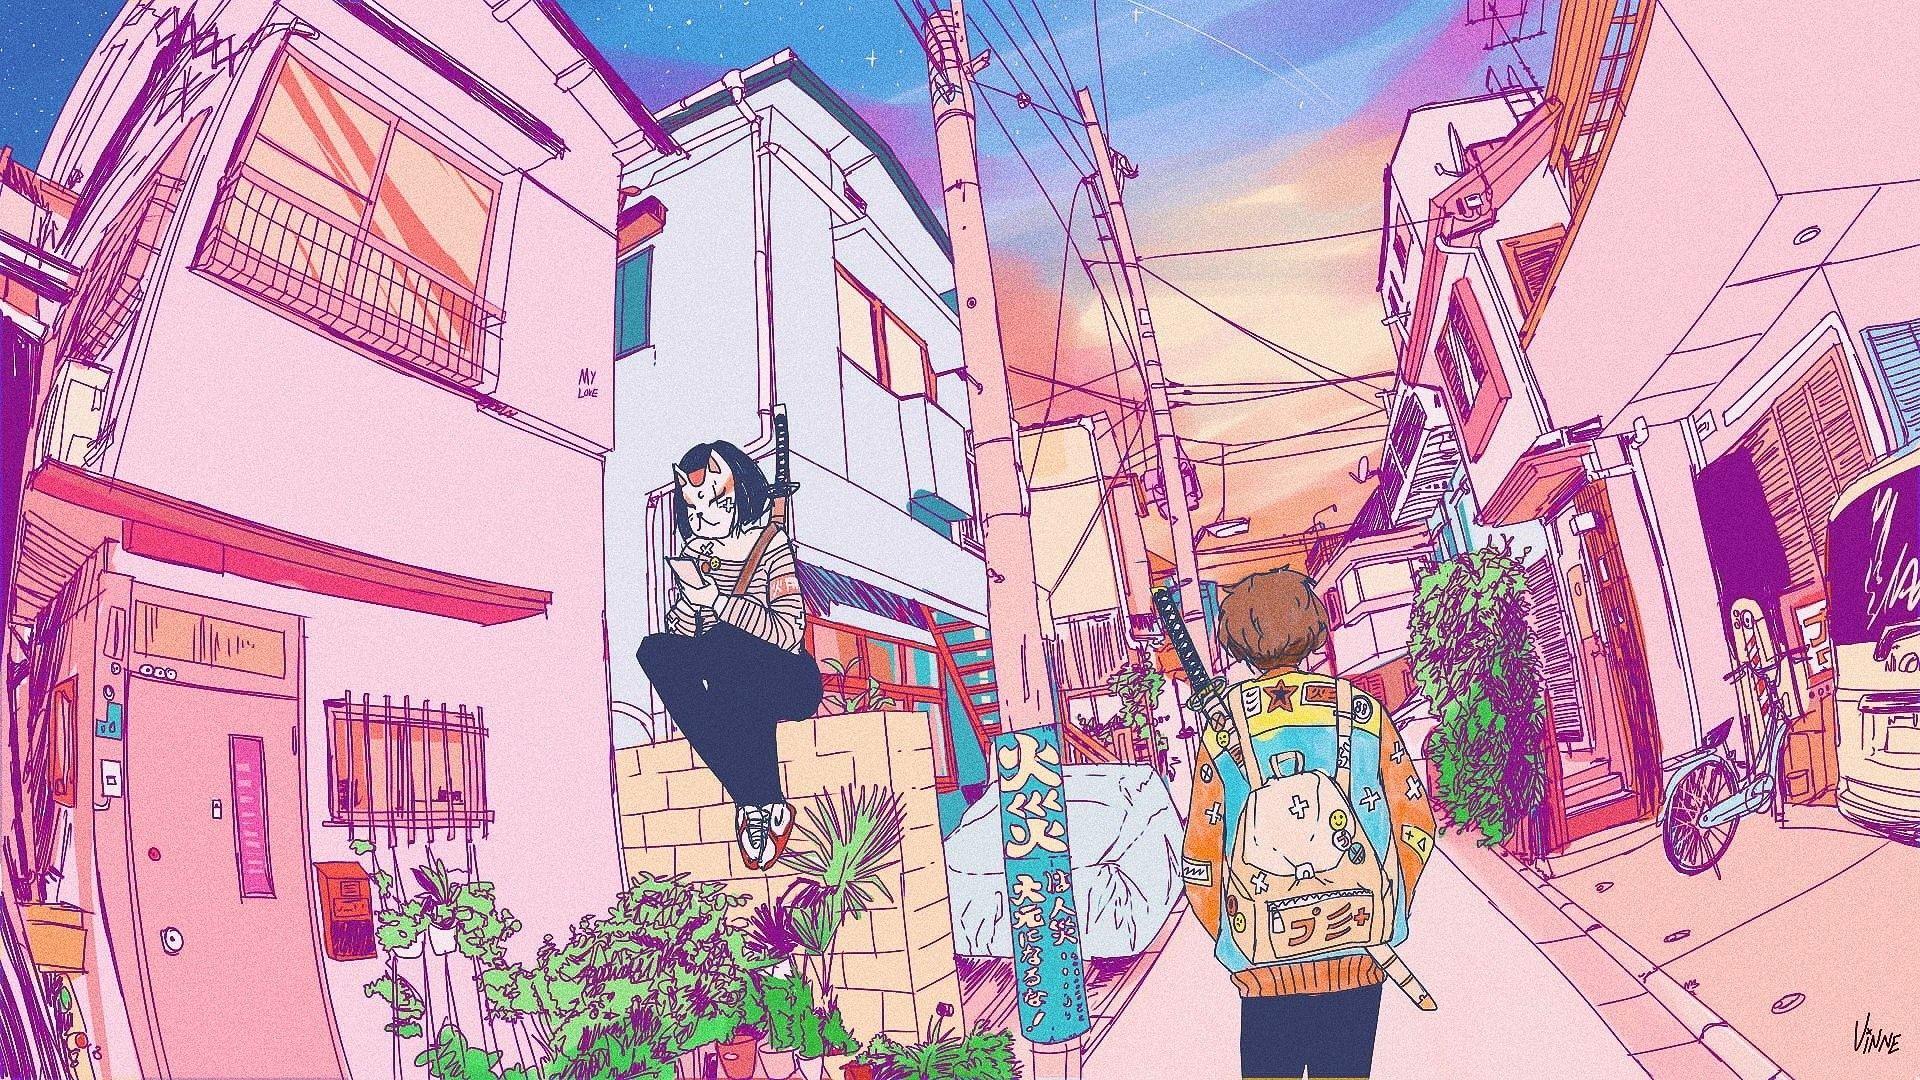 Aesthetic Anime Art Desktop Wallpapers - Top Free Aesthetic Anime Art